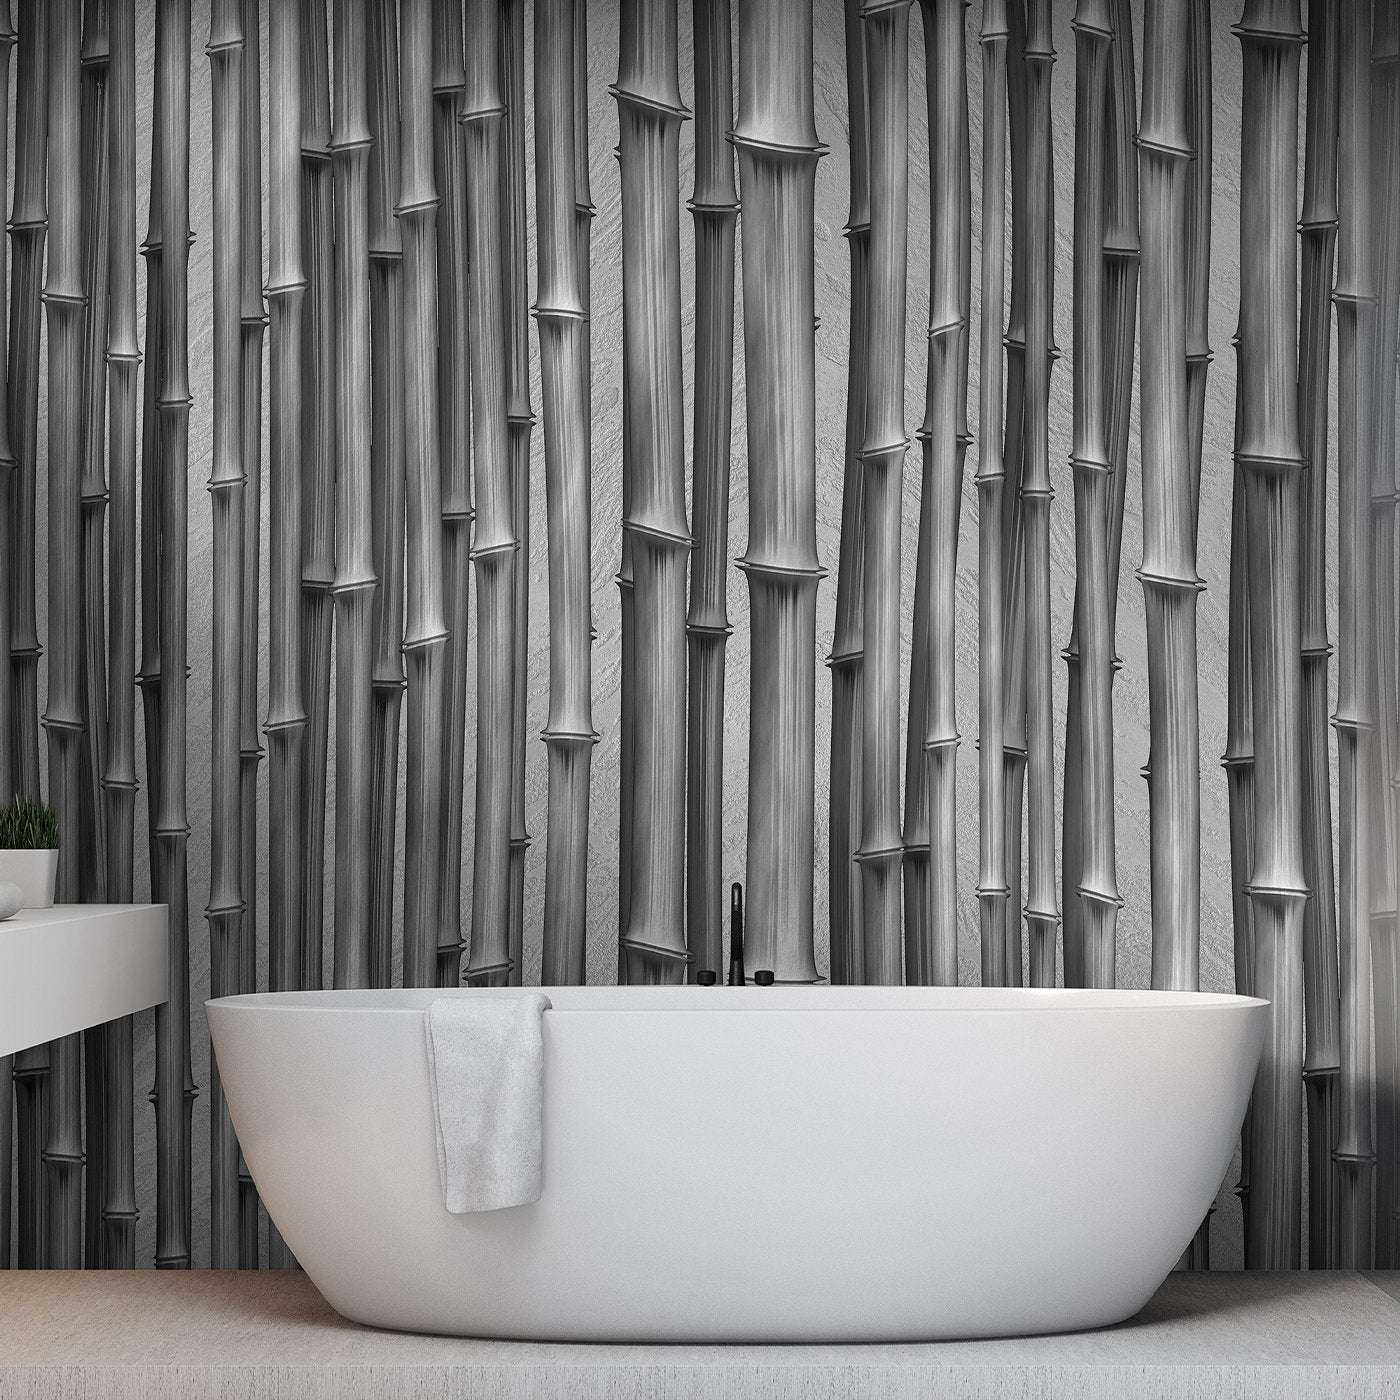 Bamboo Sticks Textured Wallpaper - Alternative view 1